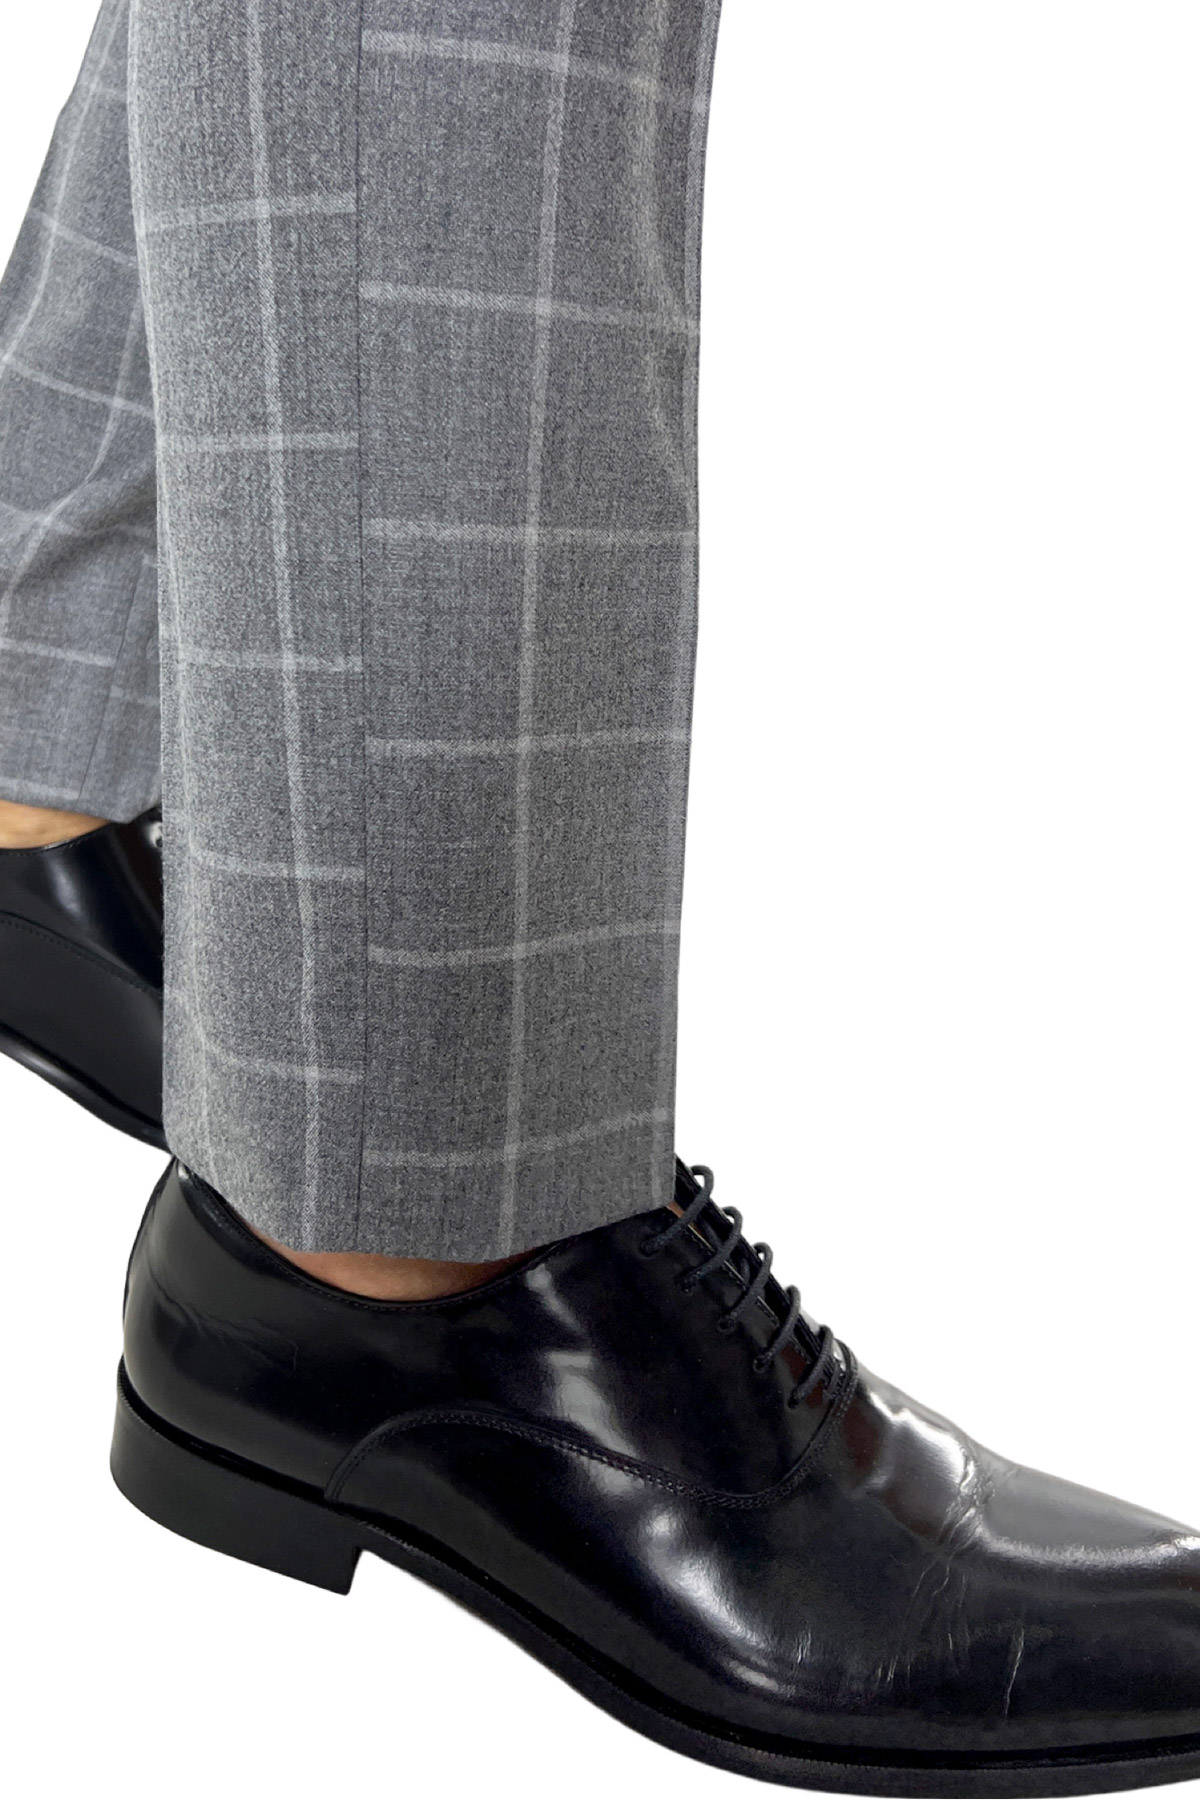 Pantalone uomo grigio a quadri in lana 100% tasca america orlo a mano